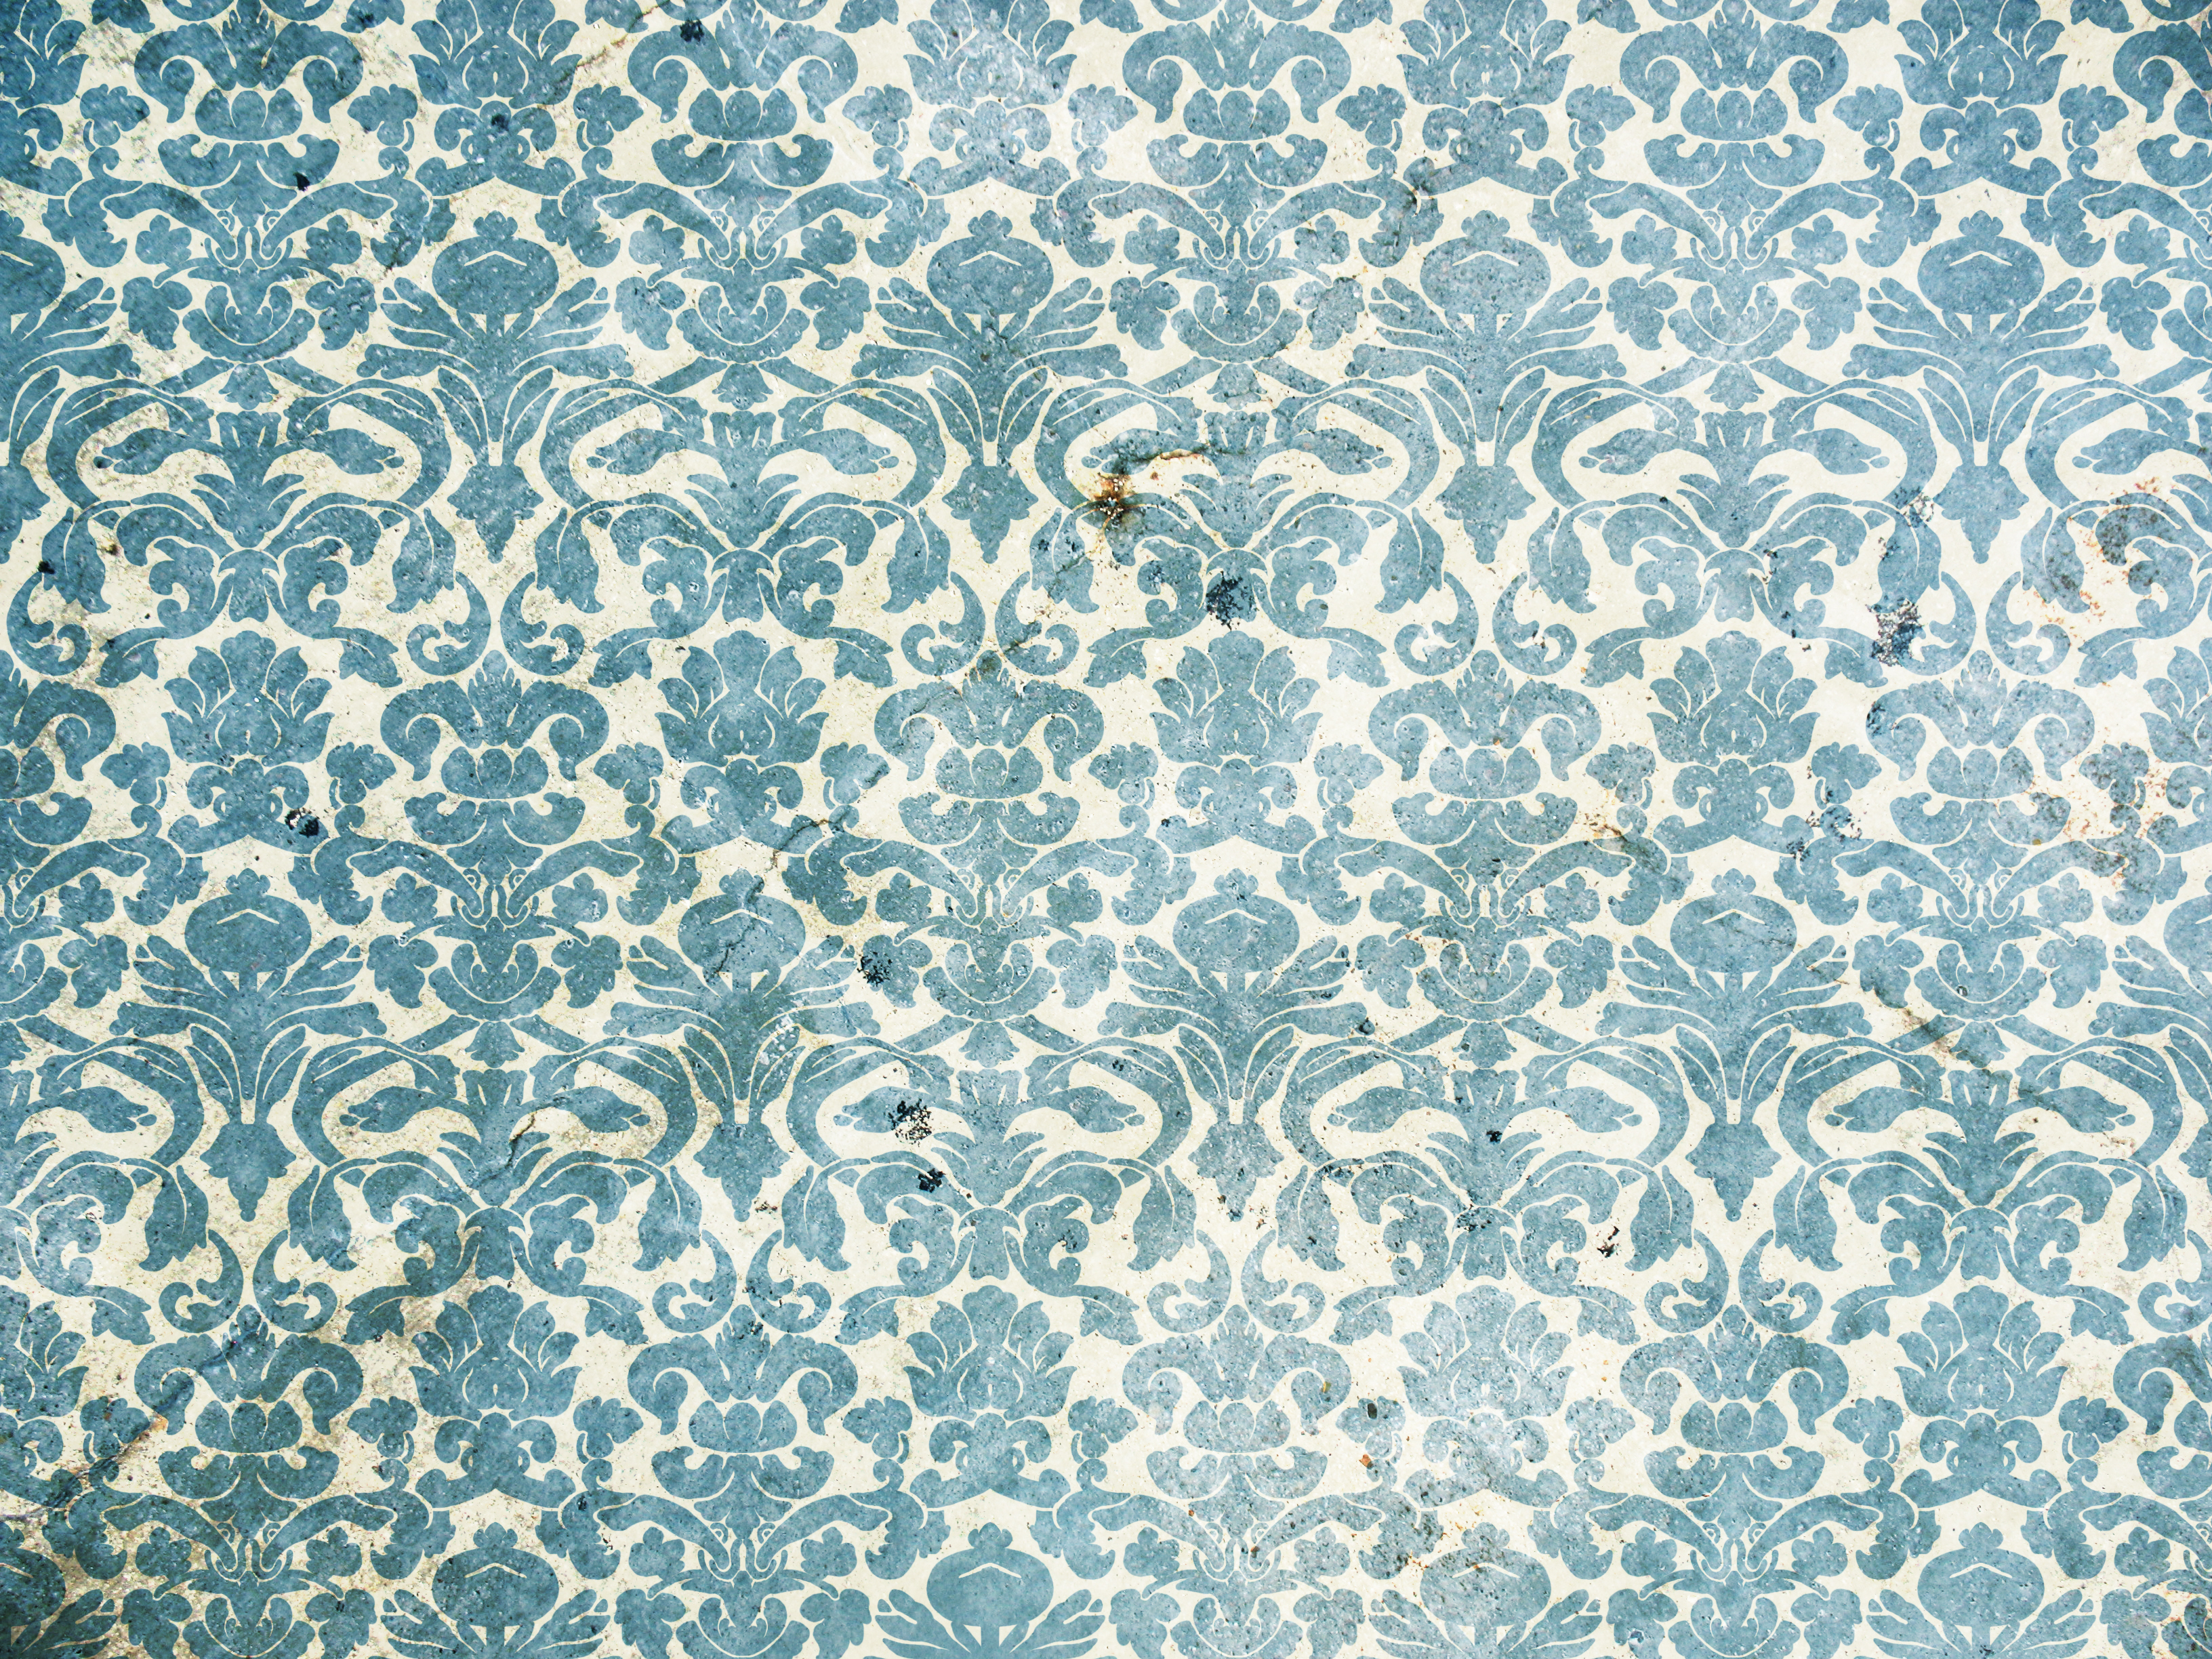 클래식 벽지 패턴,무늬,아쿠아,푸른,터키 옥,물오리